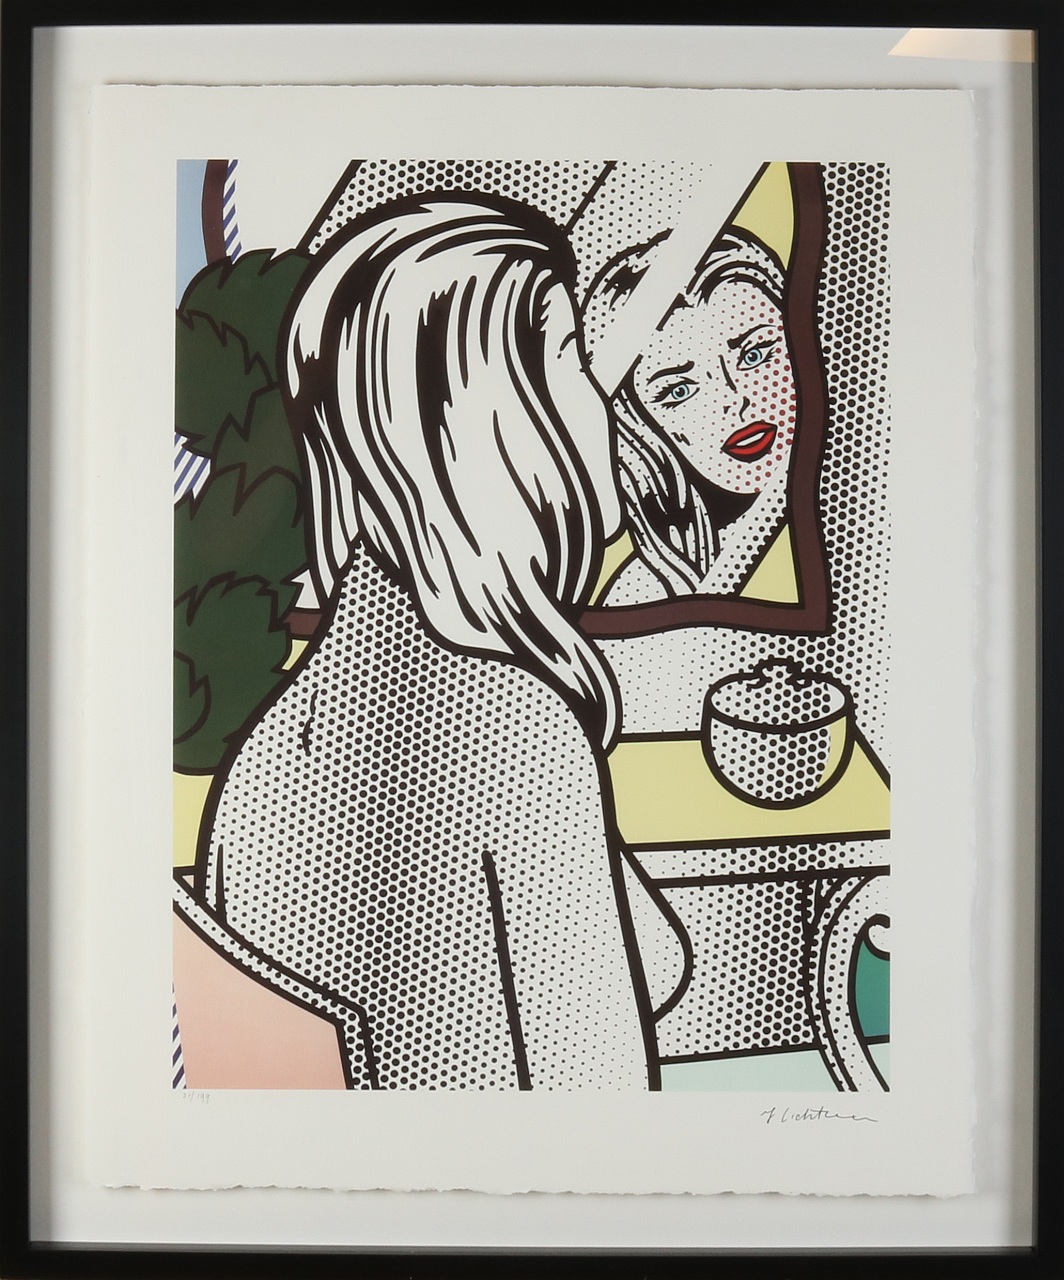 Lichtenstein, vrouw voor spiegel